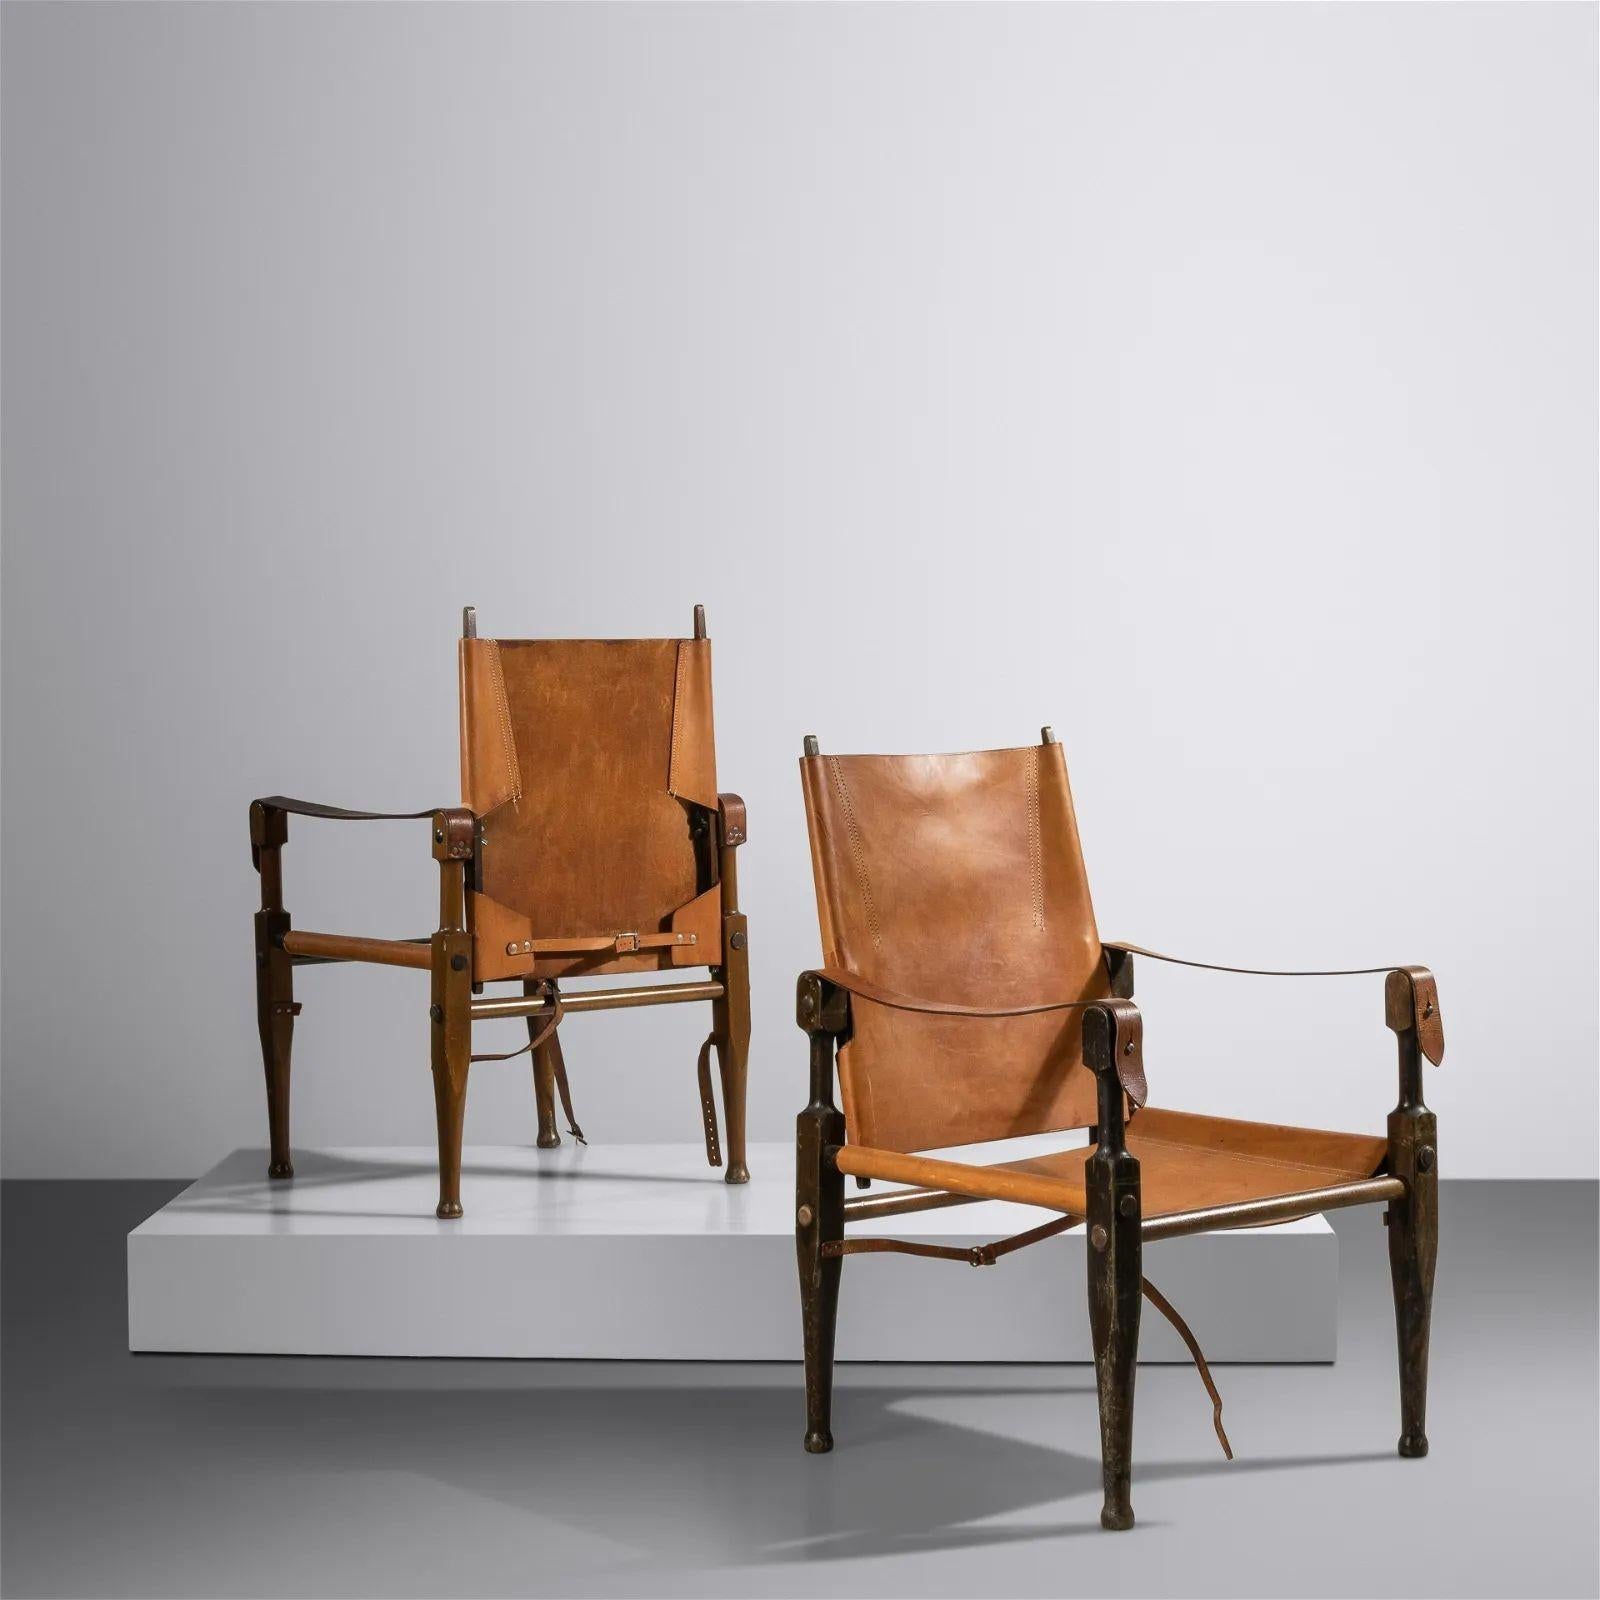 Paire de chaises longues safari danoises Kaare Klint de style moderne du milieu du siècle dernier, Rasmussen
 
Paire de chaises longues Safari, modèle KK47000 par Kaare Klint (1888-1954) pour Rud. Rasmussen Snedkerier, vers les années 1940. Chaque